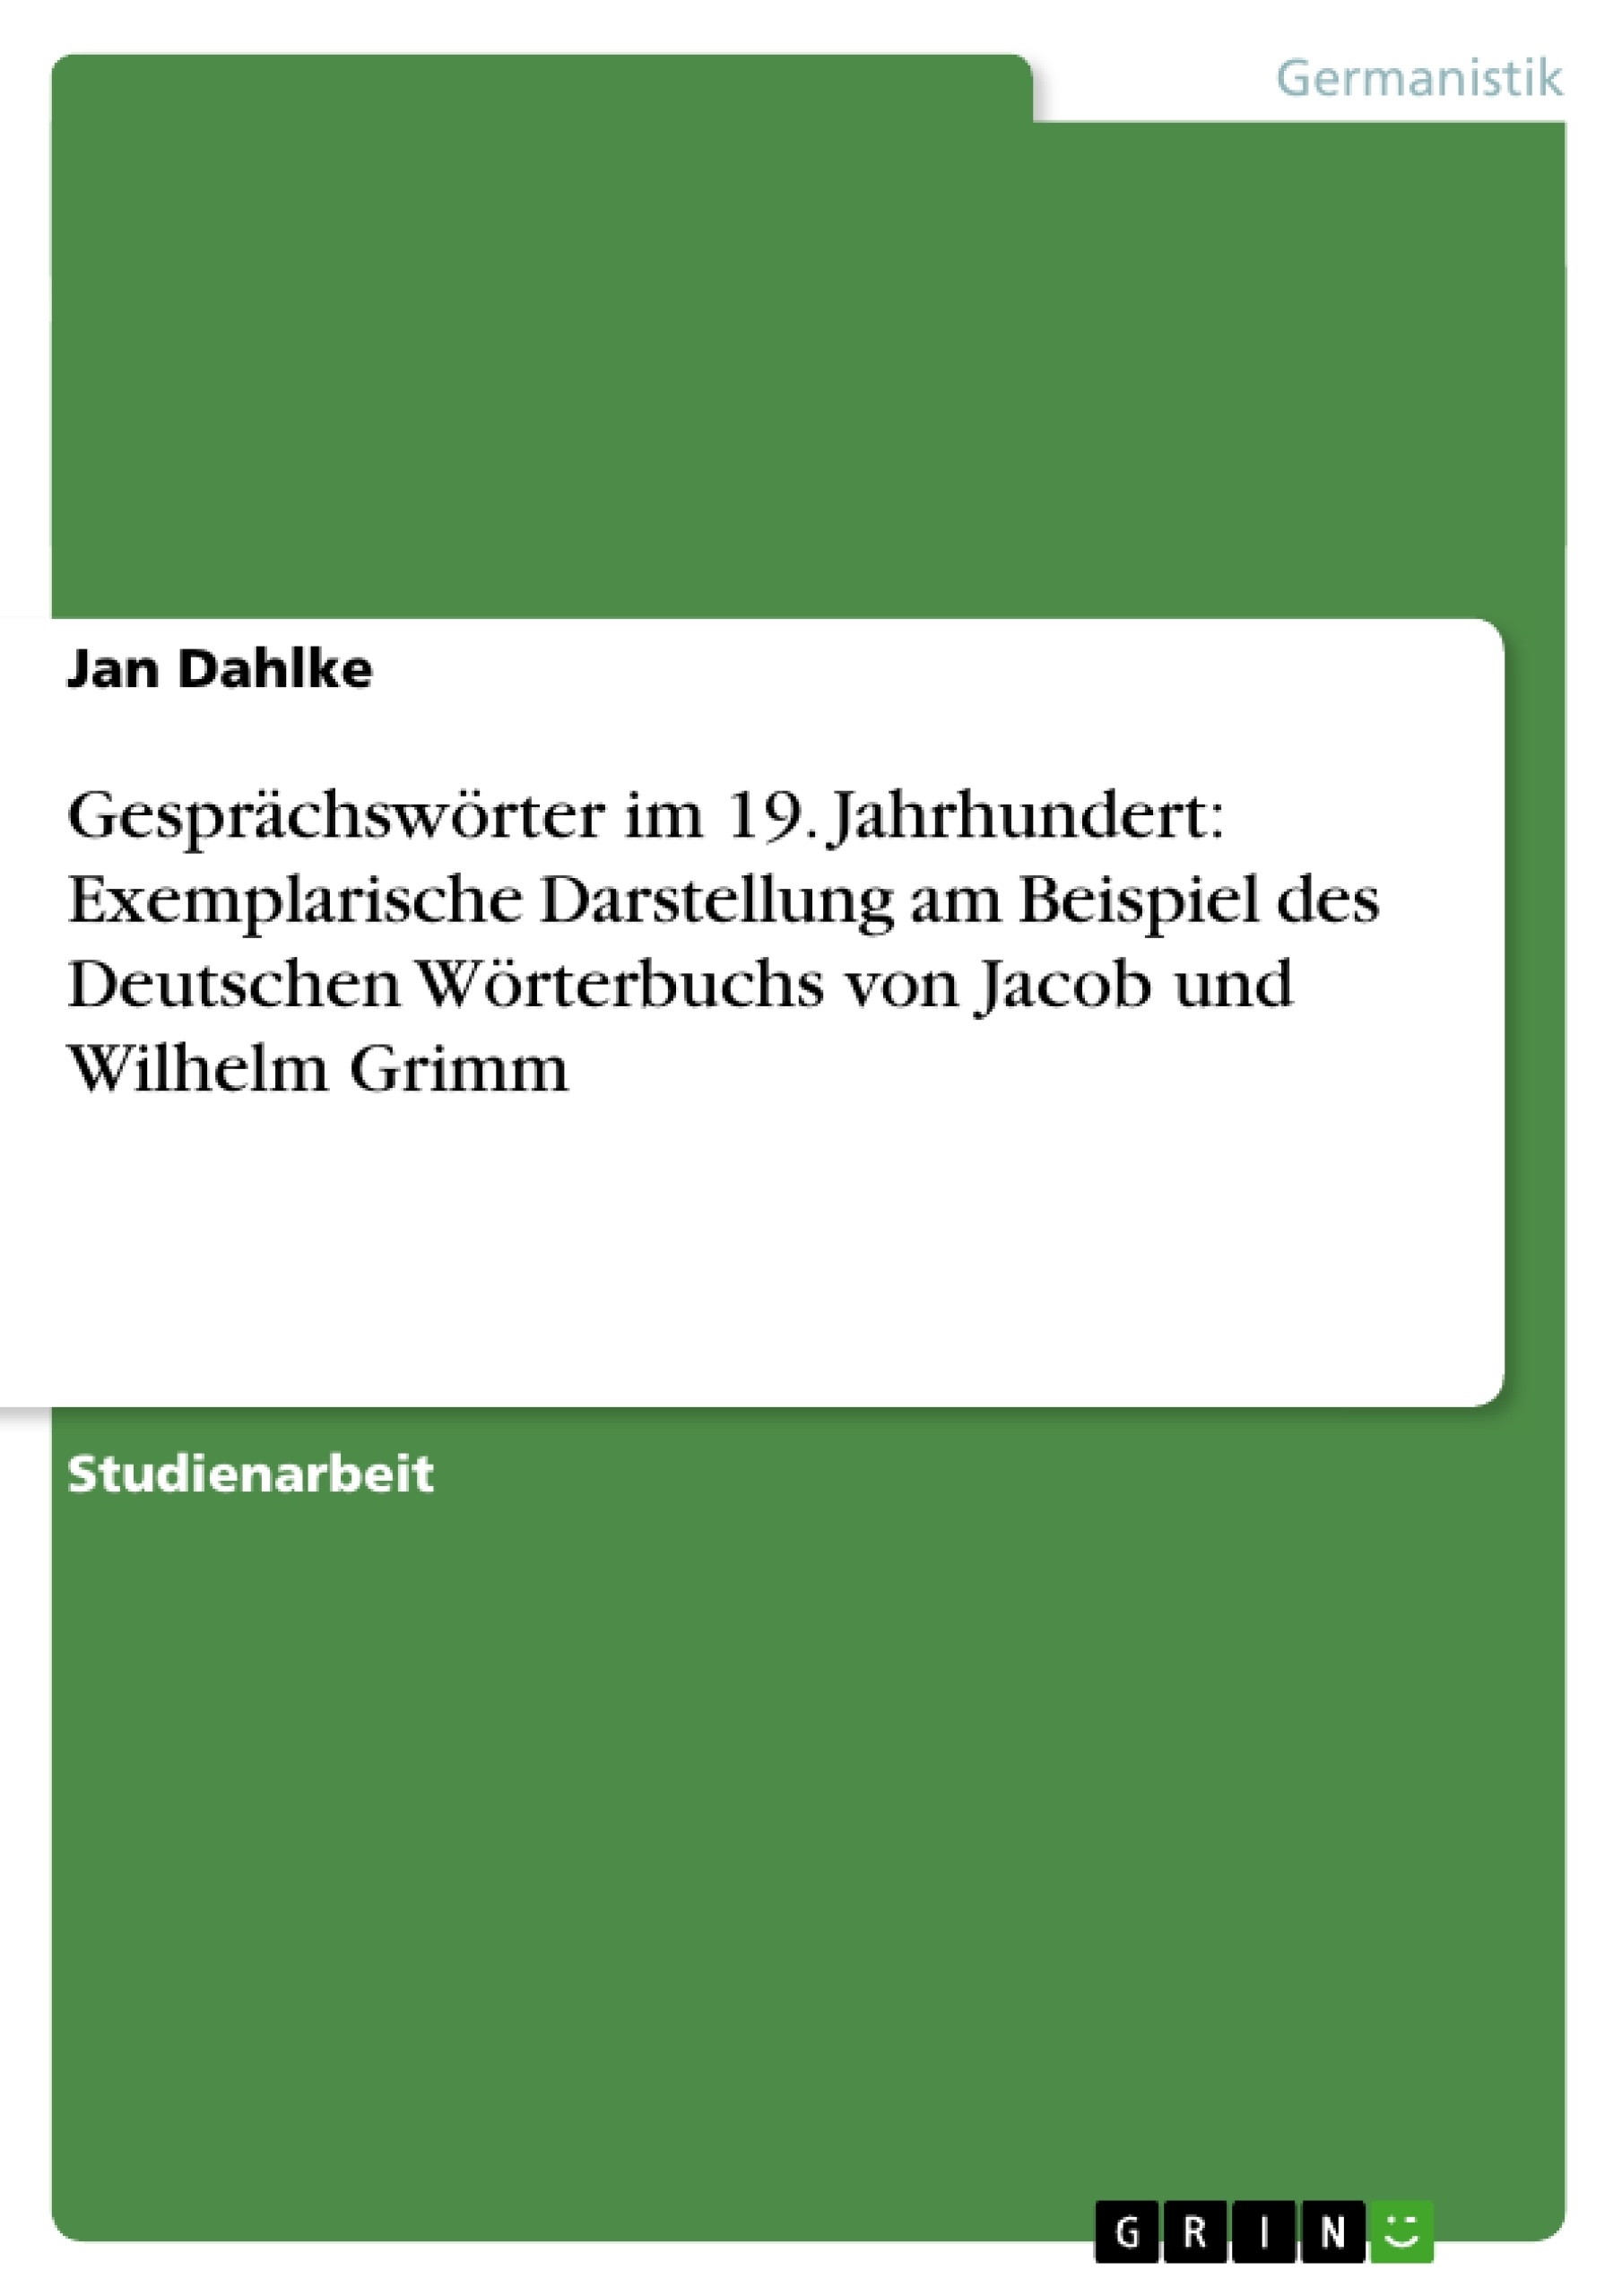 Título: Gesprächswörter im 19. Jahrhundert: Exemplarische Darstellung am Beispiel des Deutschen Wörterbuchs von Jacob und Wilhelm Grimm